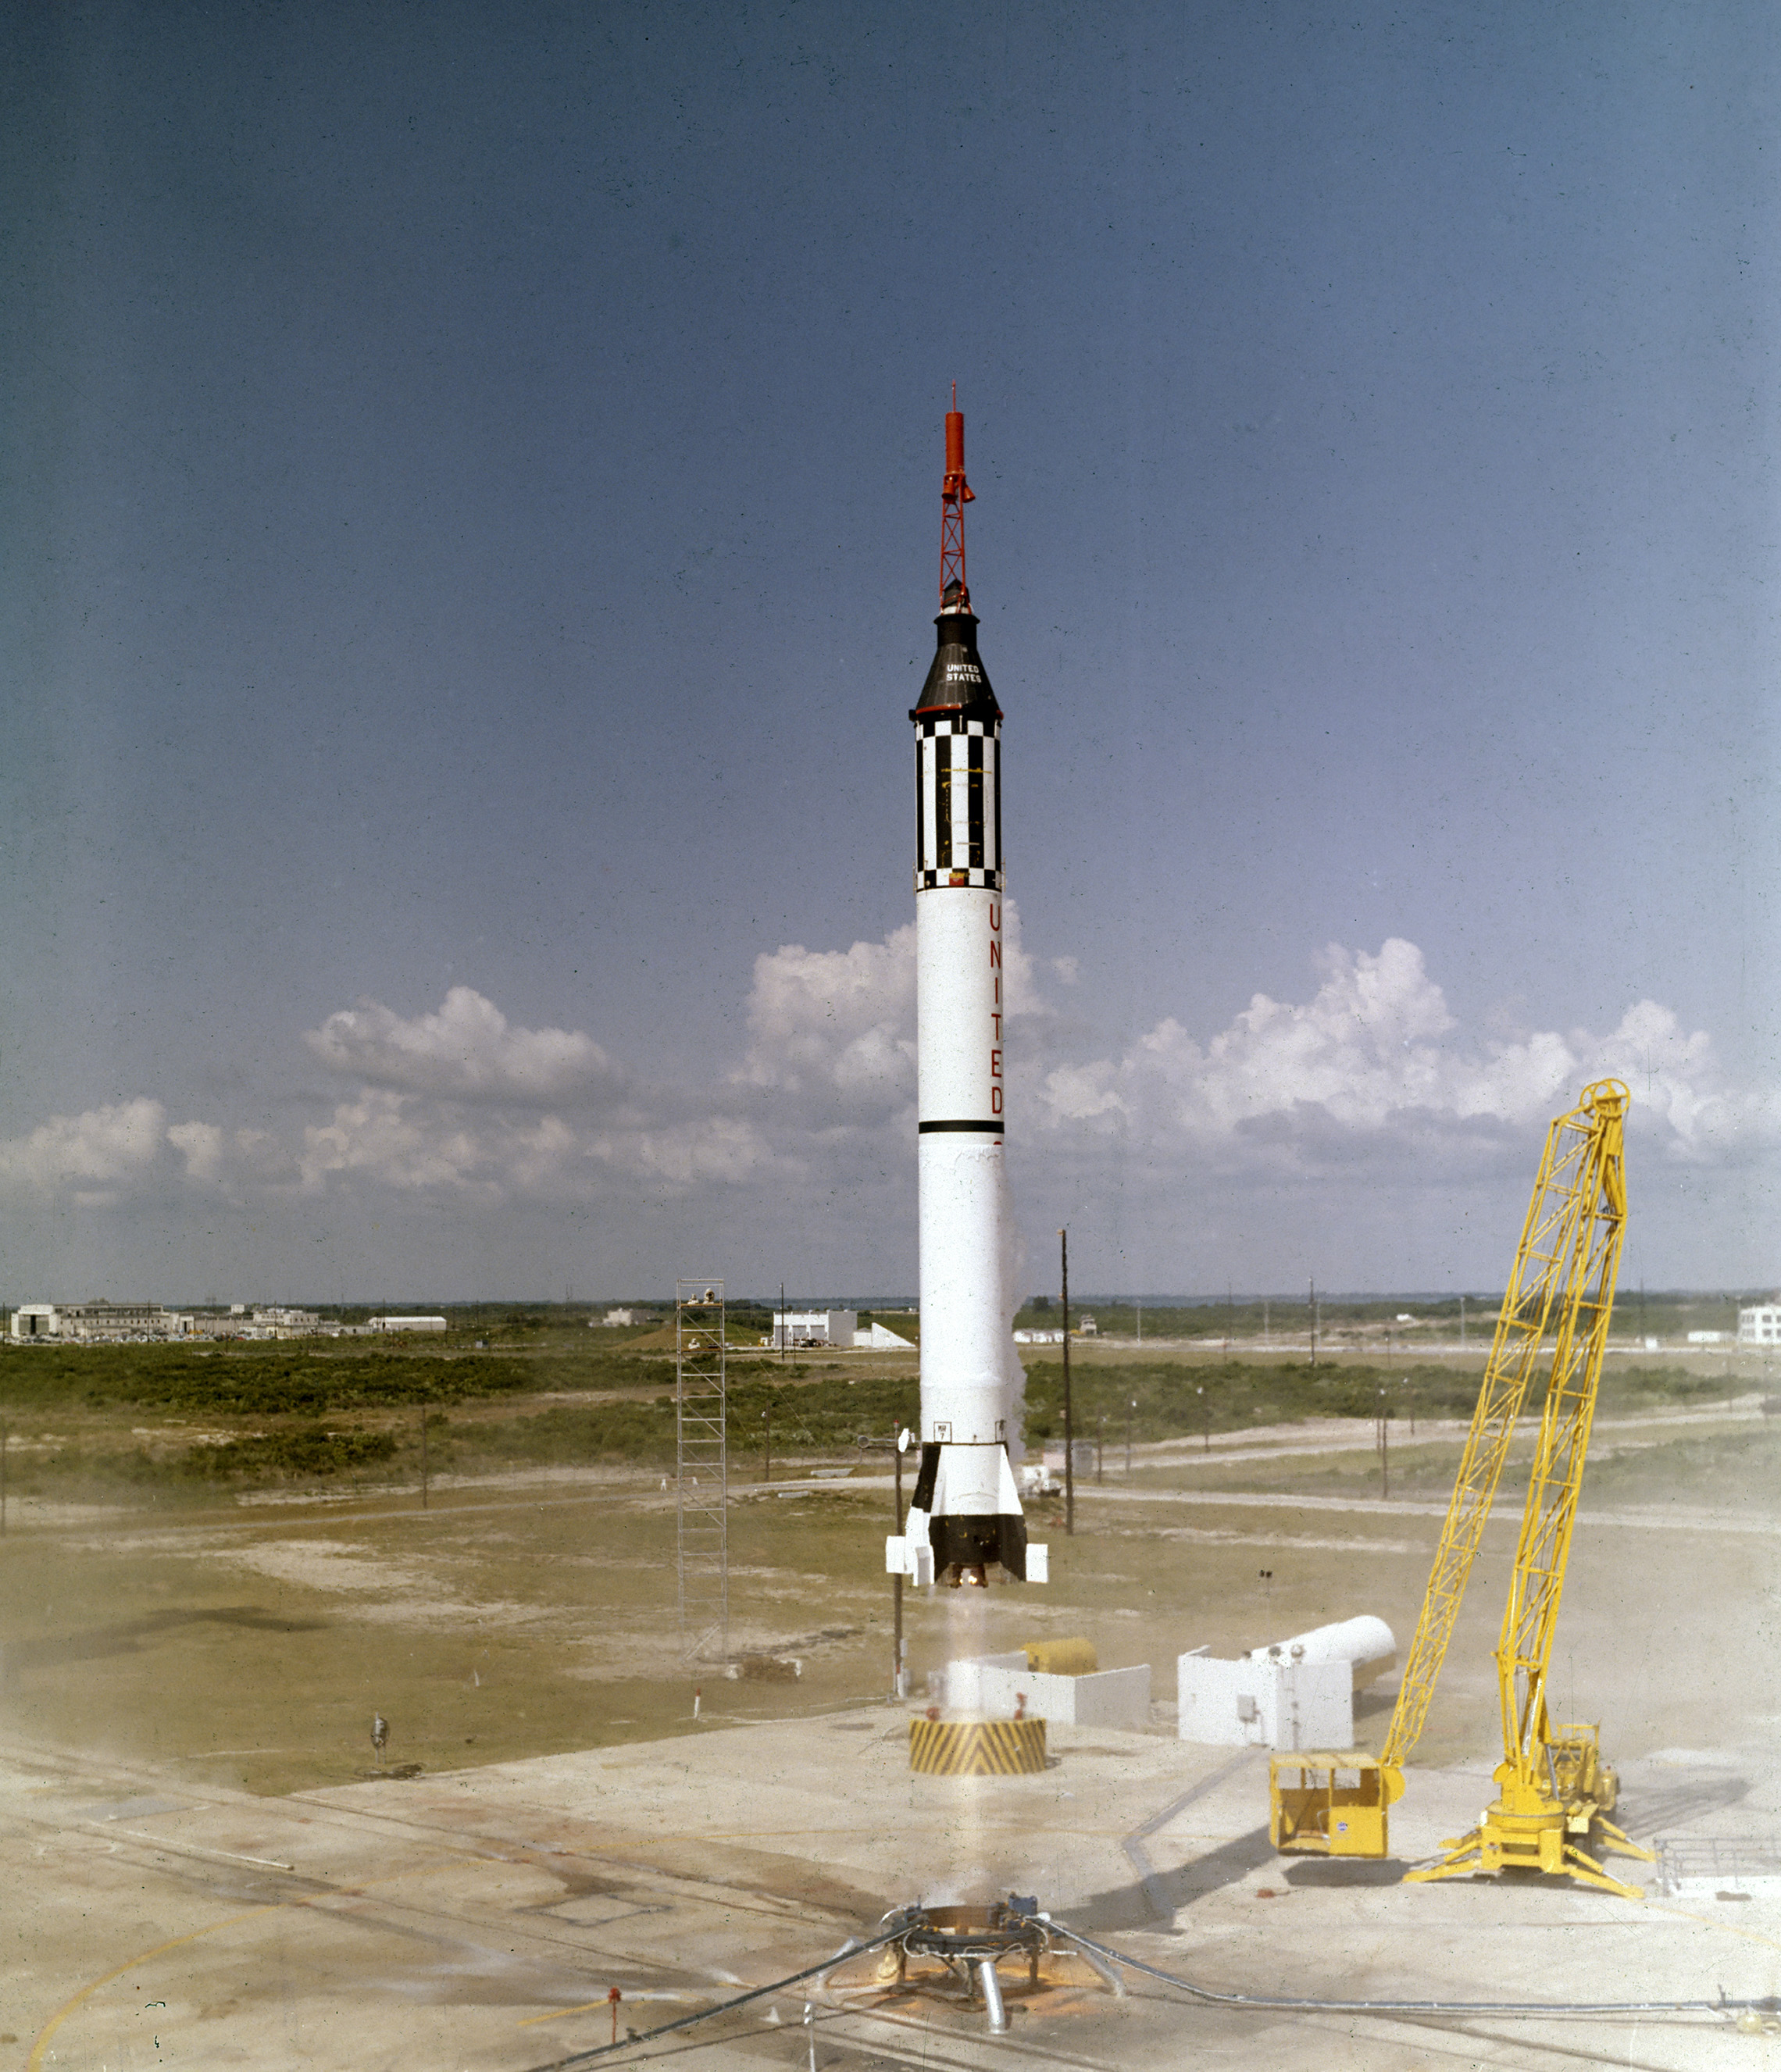 宇宙飛行士アラン-B-シェパード、Jr.は月にフリーダム7マーキュリー宇宙船でオフに持ち上げます5,1961. マーキュリー・レッドストーン(MERCURY-Redstone,MR-3)の3回目の飛行は、Wernher von Braun博士とアラバマ州ハンツシルのロケットチームによって開発され、米国初の有人宇宙ミッションであった。 15分間の眼窩下飛行の間、シェパードは高度115マイルに達し、302マイルのダウンレンジを旅した。 (NASA)